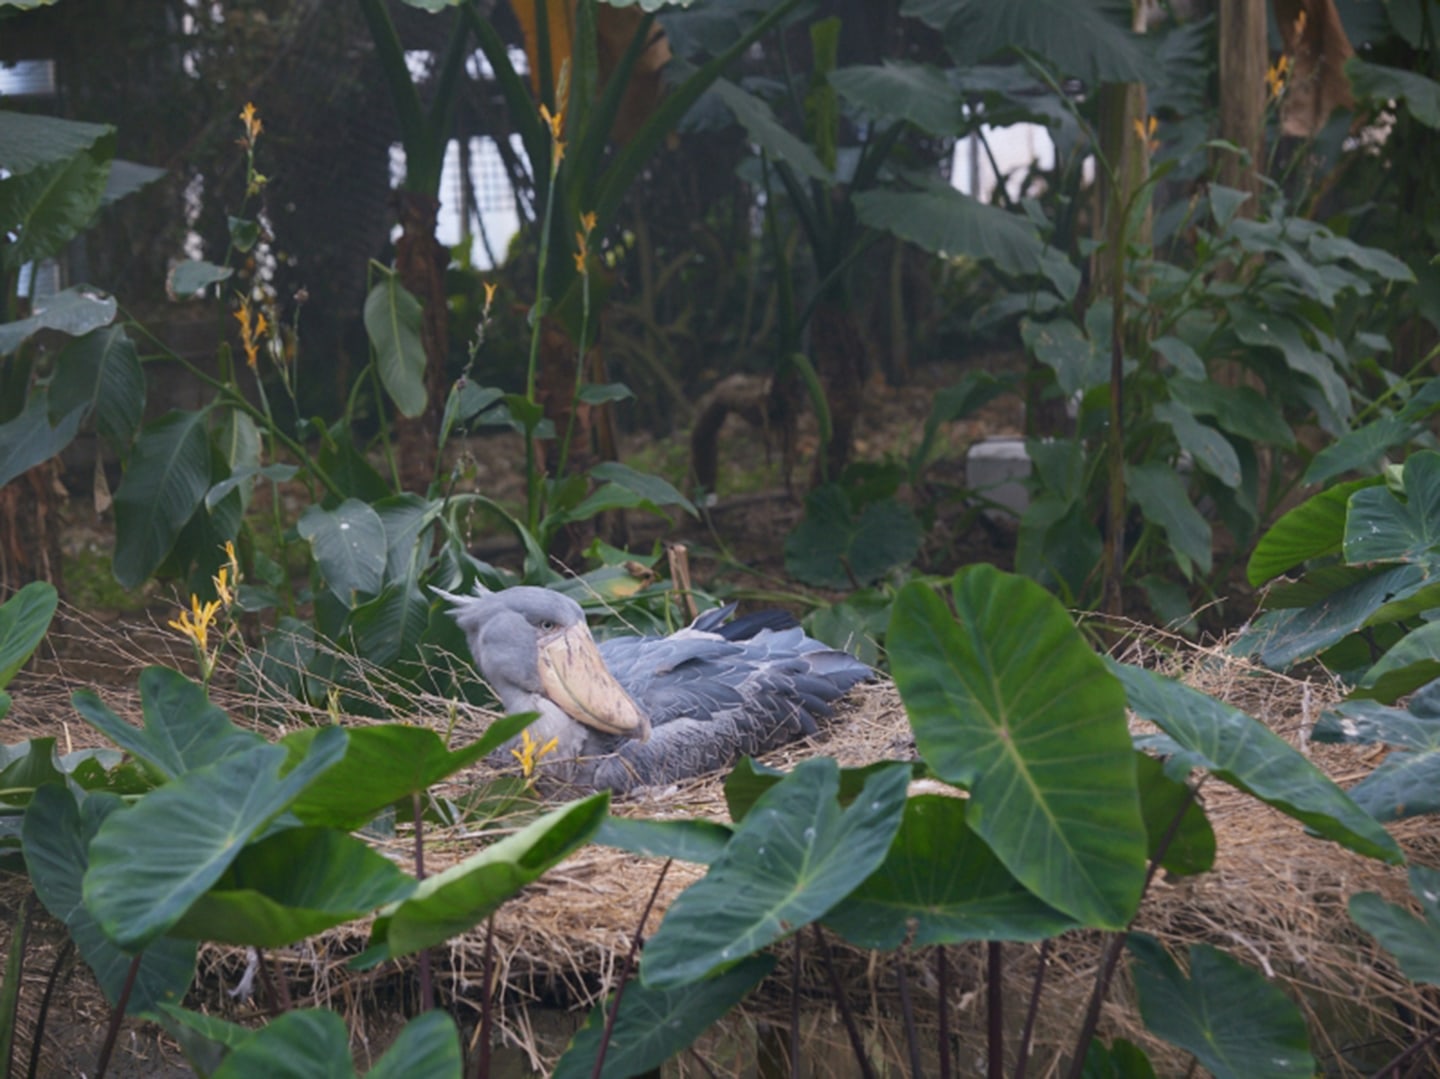 「動かない鳥」として園でも人気のハシビロコウは、アフリカの湿地帯に生息する絶滅危惧種。アジア初となる飼育下での自然繁殖を目指し、彼らの生息域を再現したエリアがクラウドファンディングによって実現。